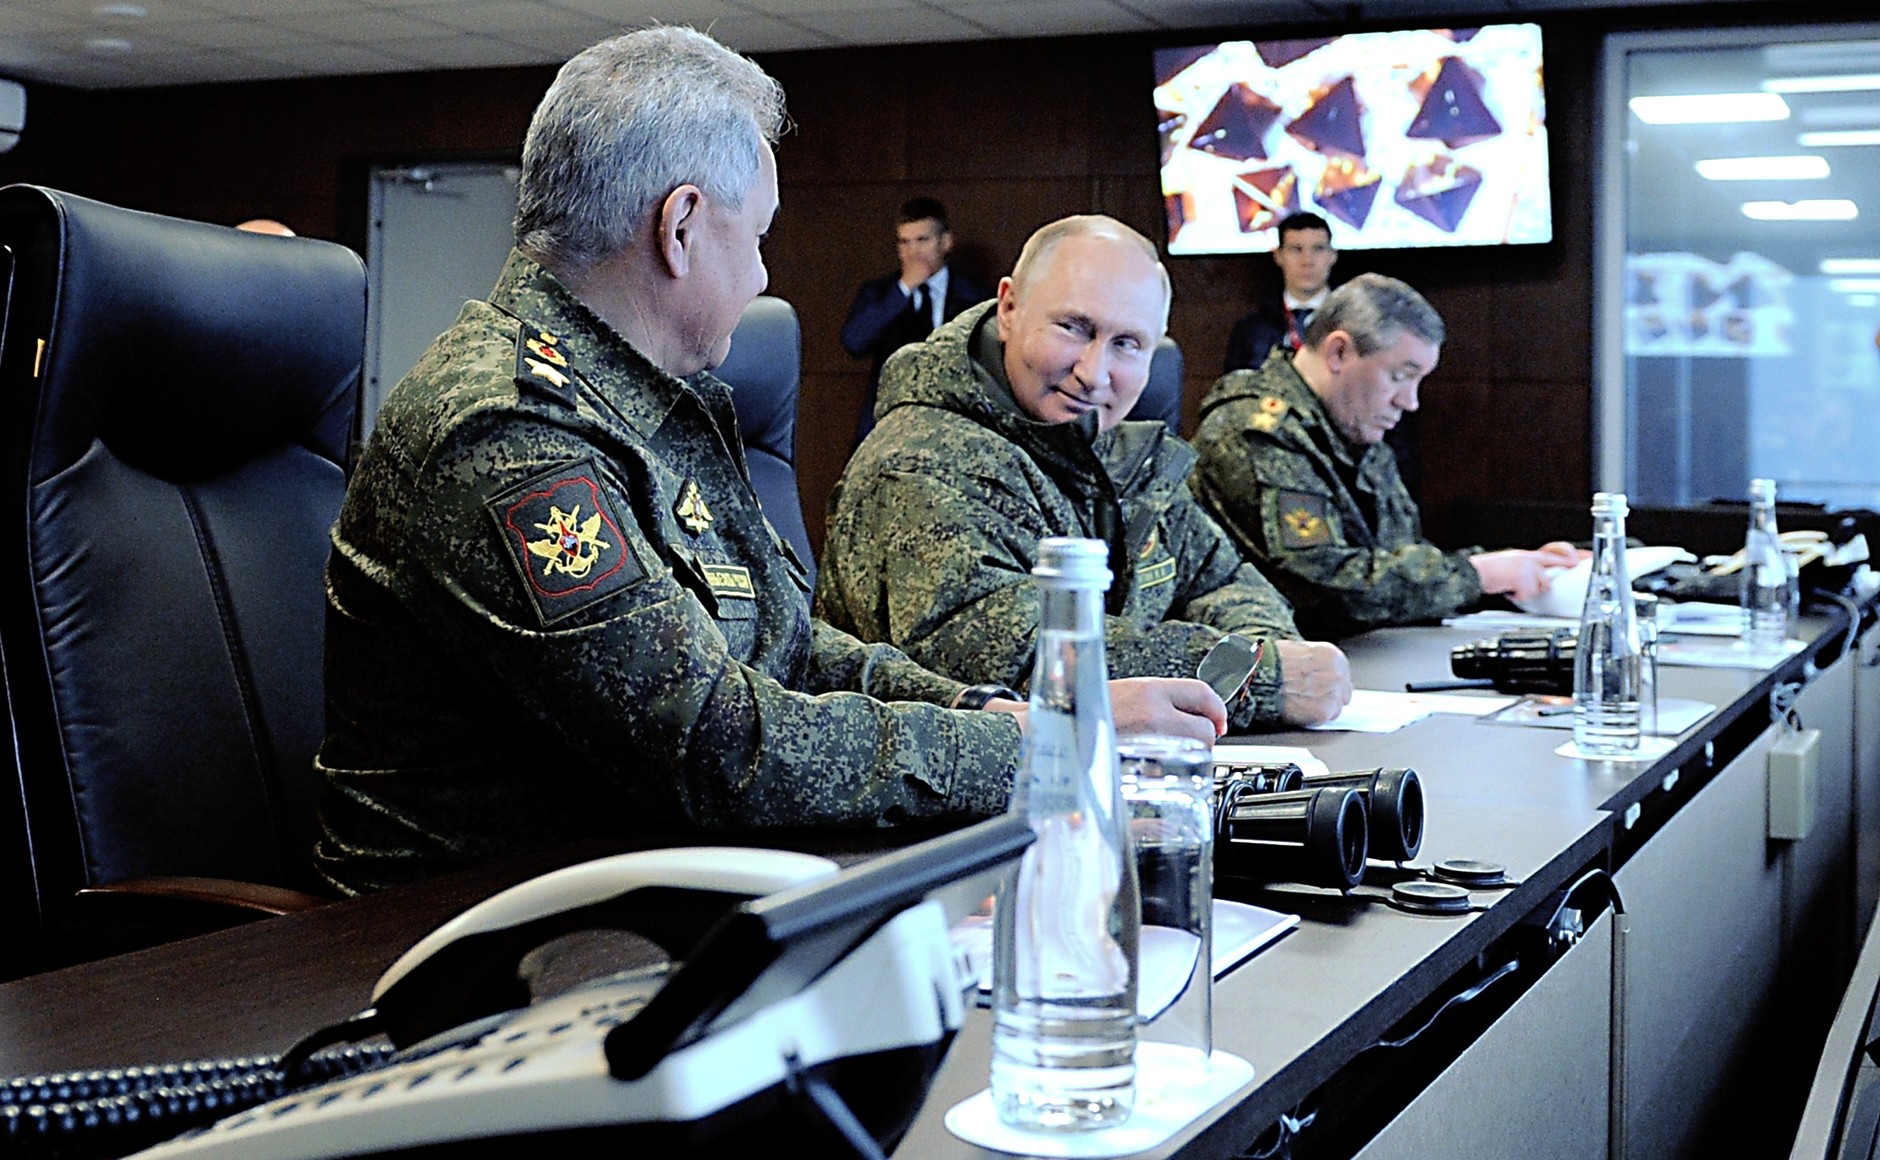 Bild: Kremlin.ru, Putin at military exercises (2022) 02., CC BY 4.0, via Wikimedia Commons, (keine Änderungen vorgenommen)